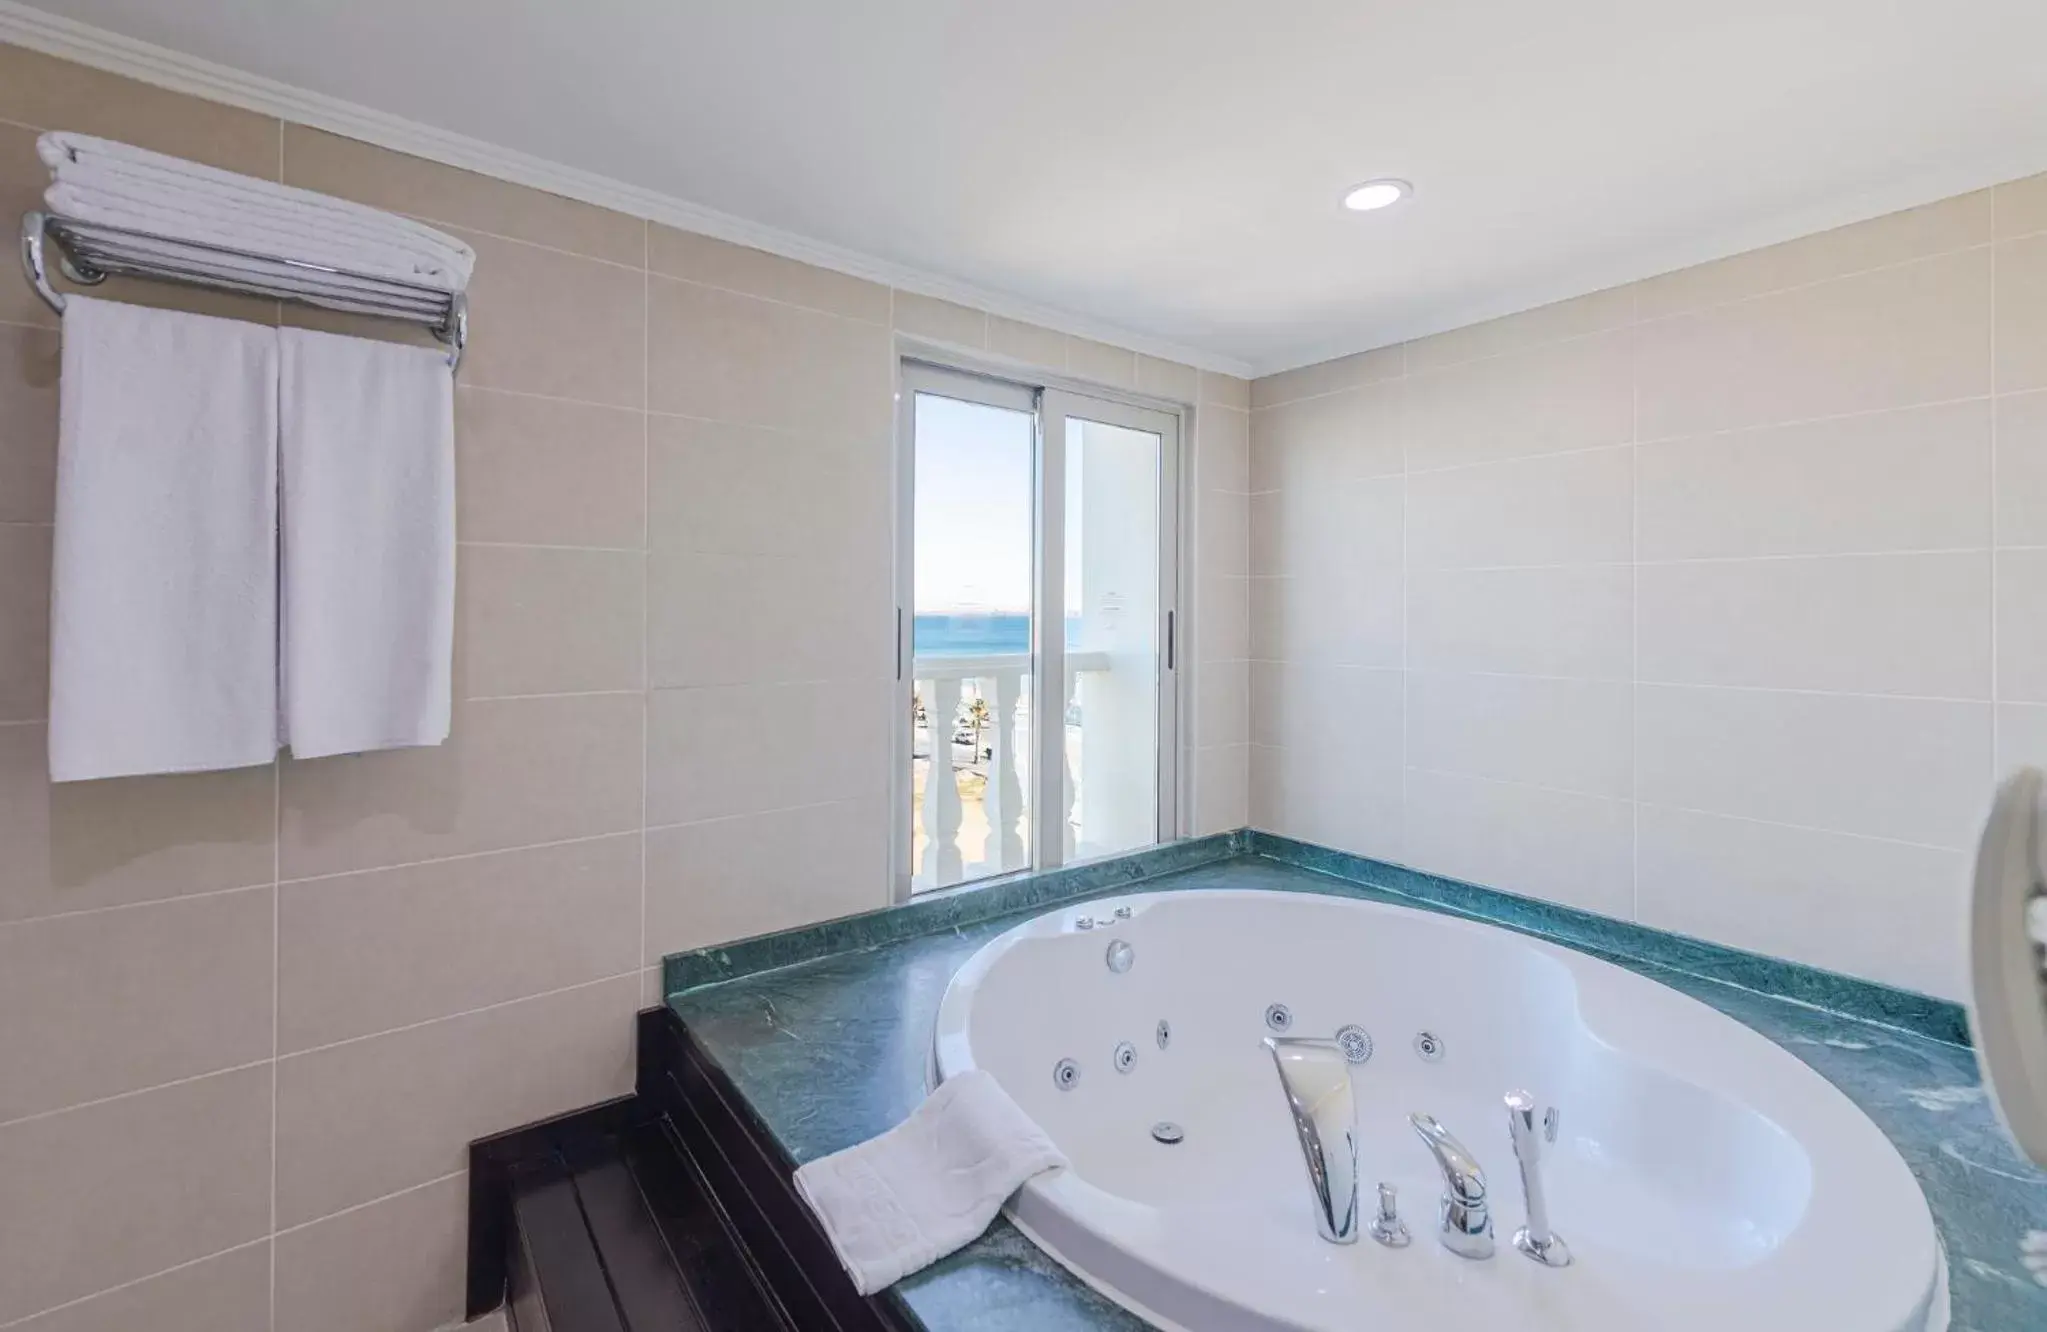 Bedroom, Bathroom in Crowne Plaza Antalya, an IHG Hotel